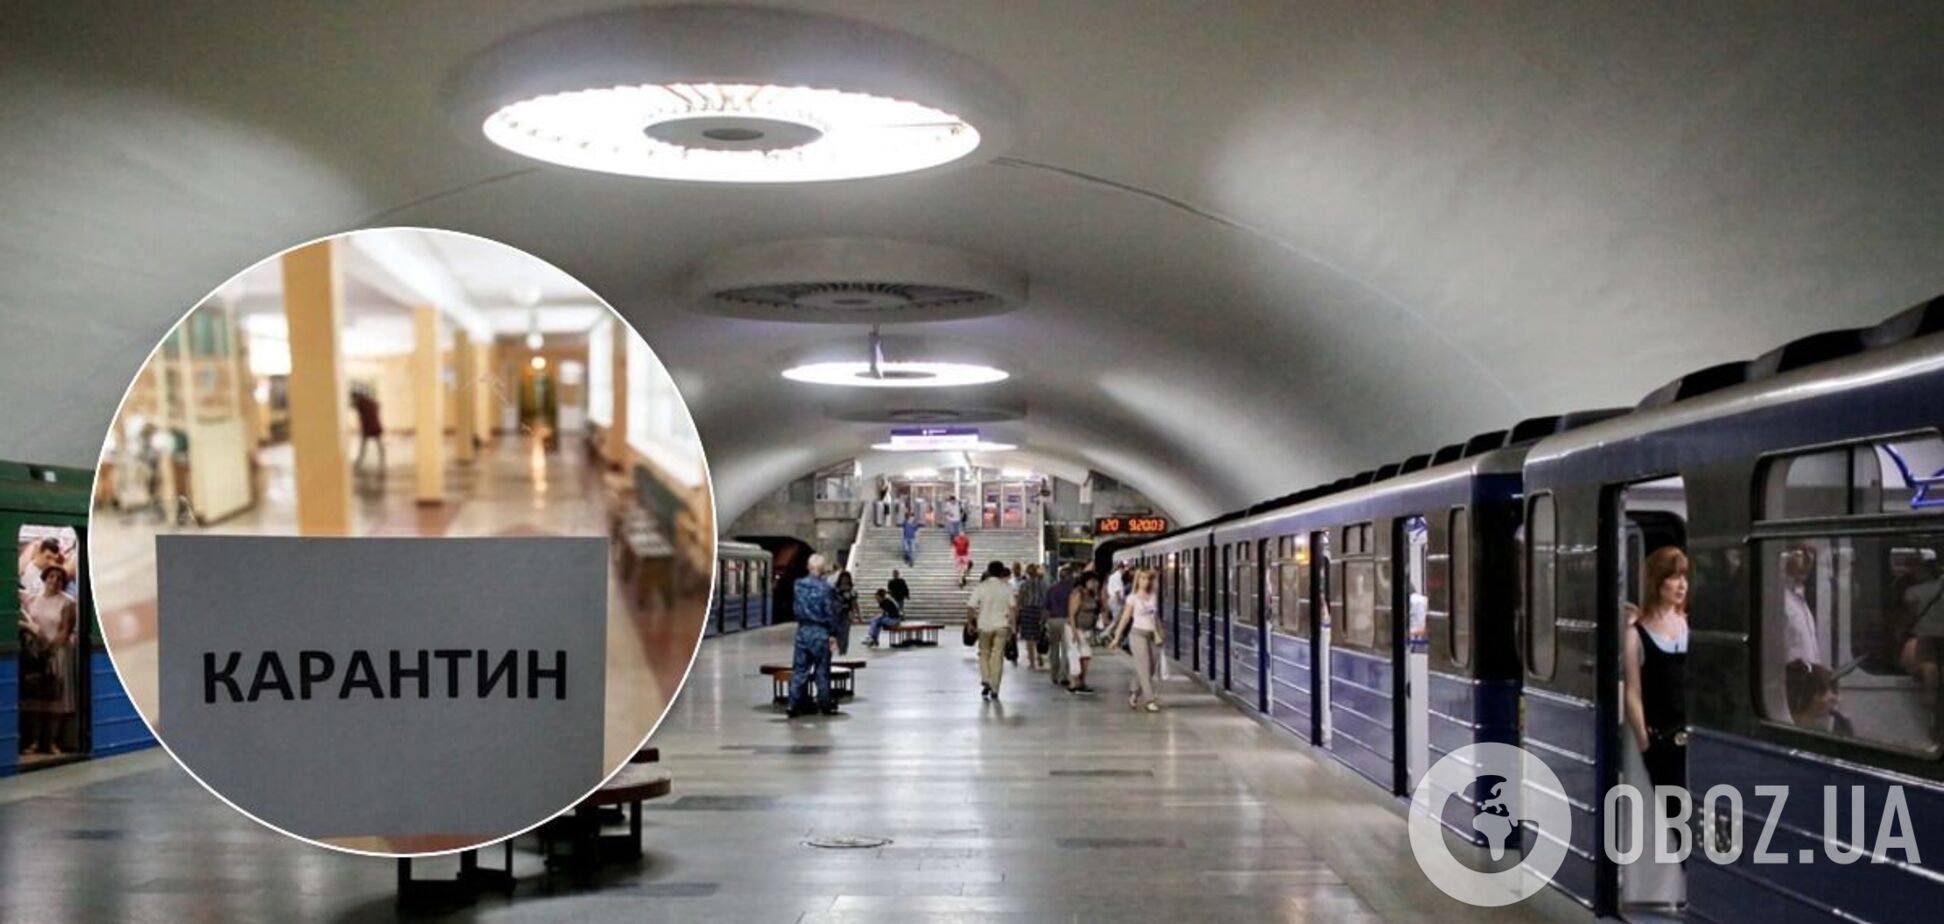 Харьковчане бурно отреагировали на возможное закрытие метро из-за карантина: обещают бунт